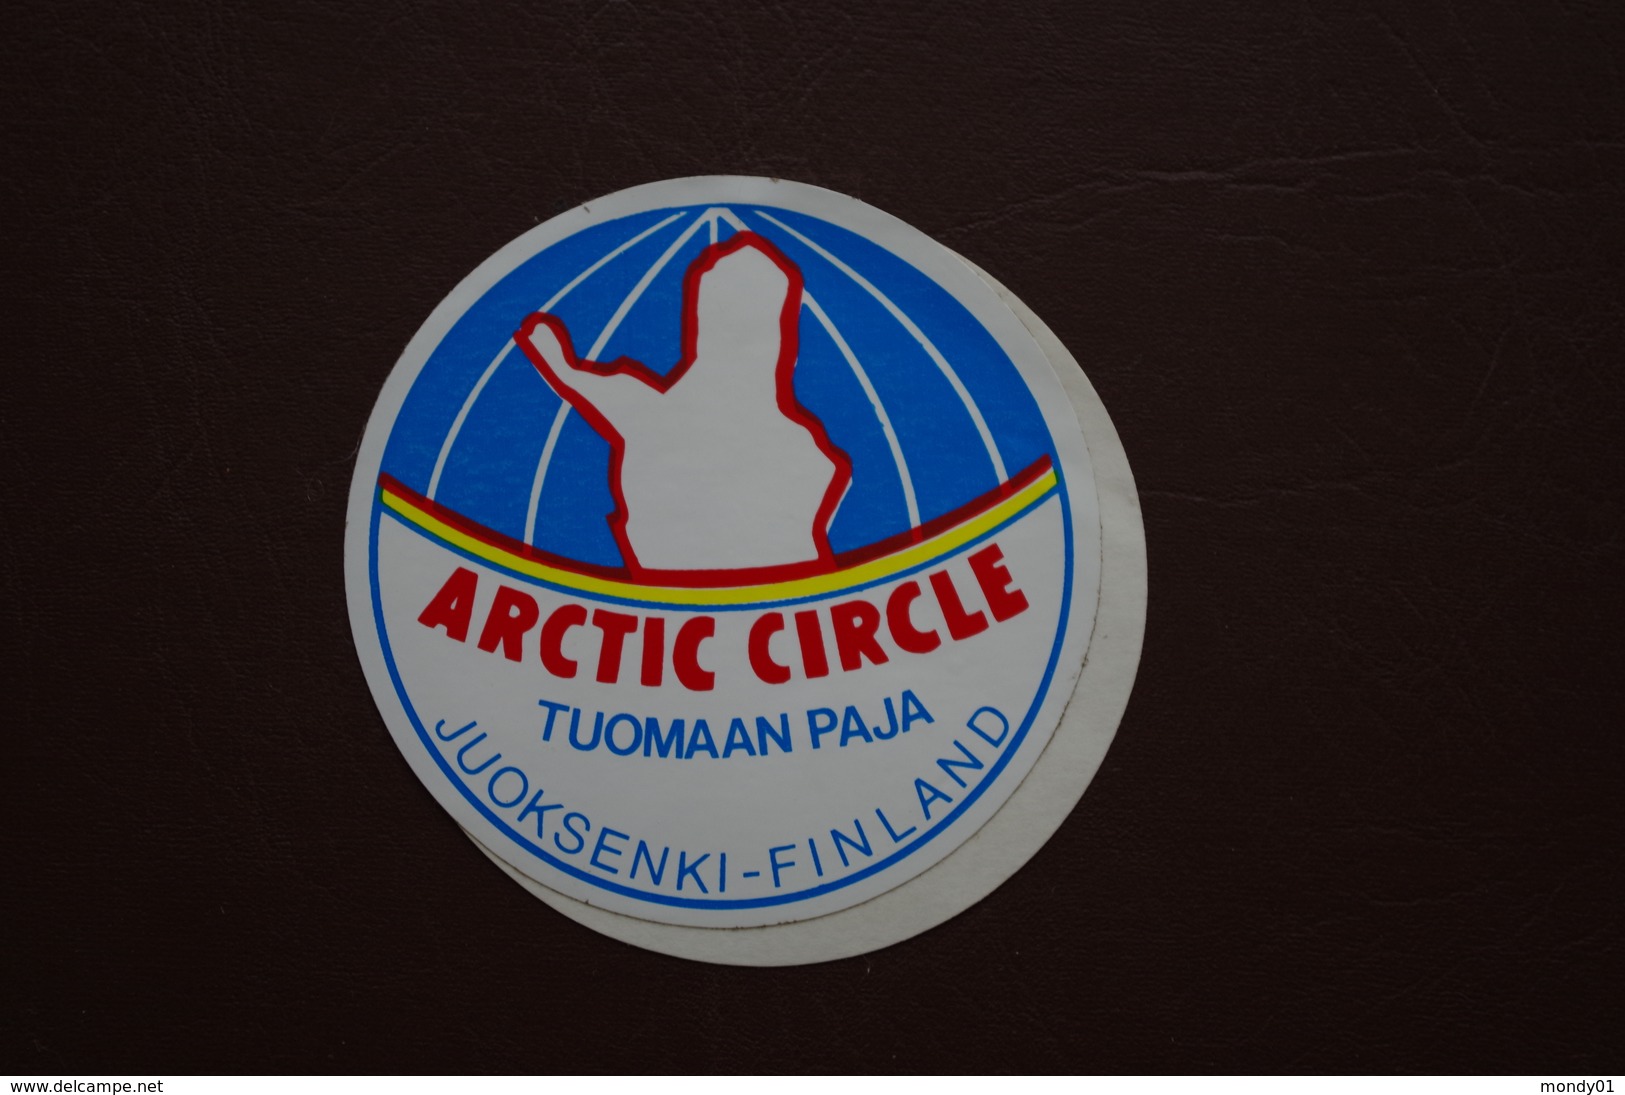 6-177 Autocollant Arctic Circle Cercle Polaire Finlande Juoksenki Tuomaan Paja Mesure D'Arc Meridien - Événements & Commémorations